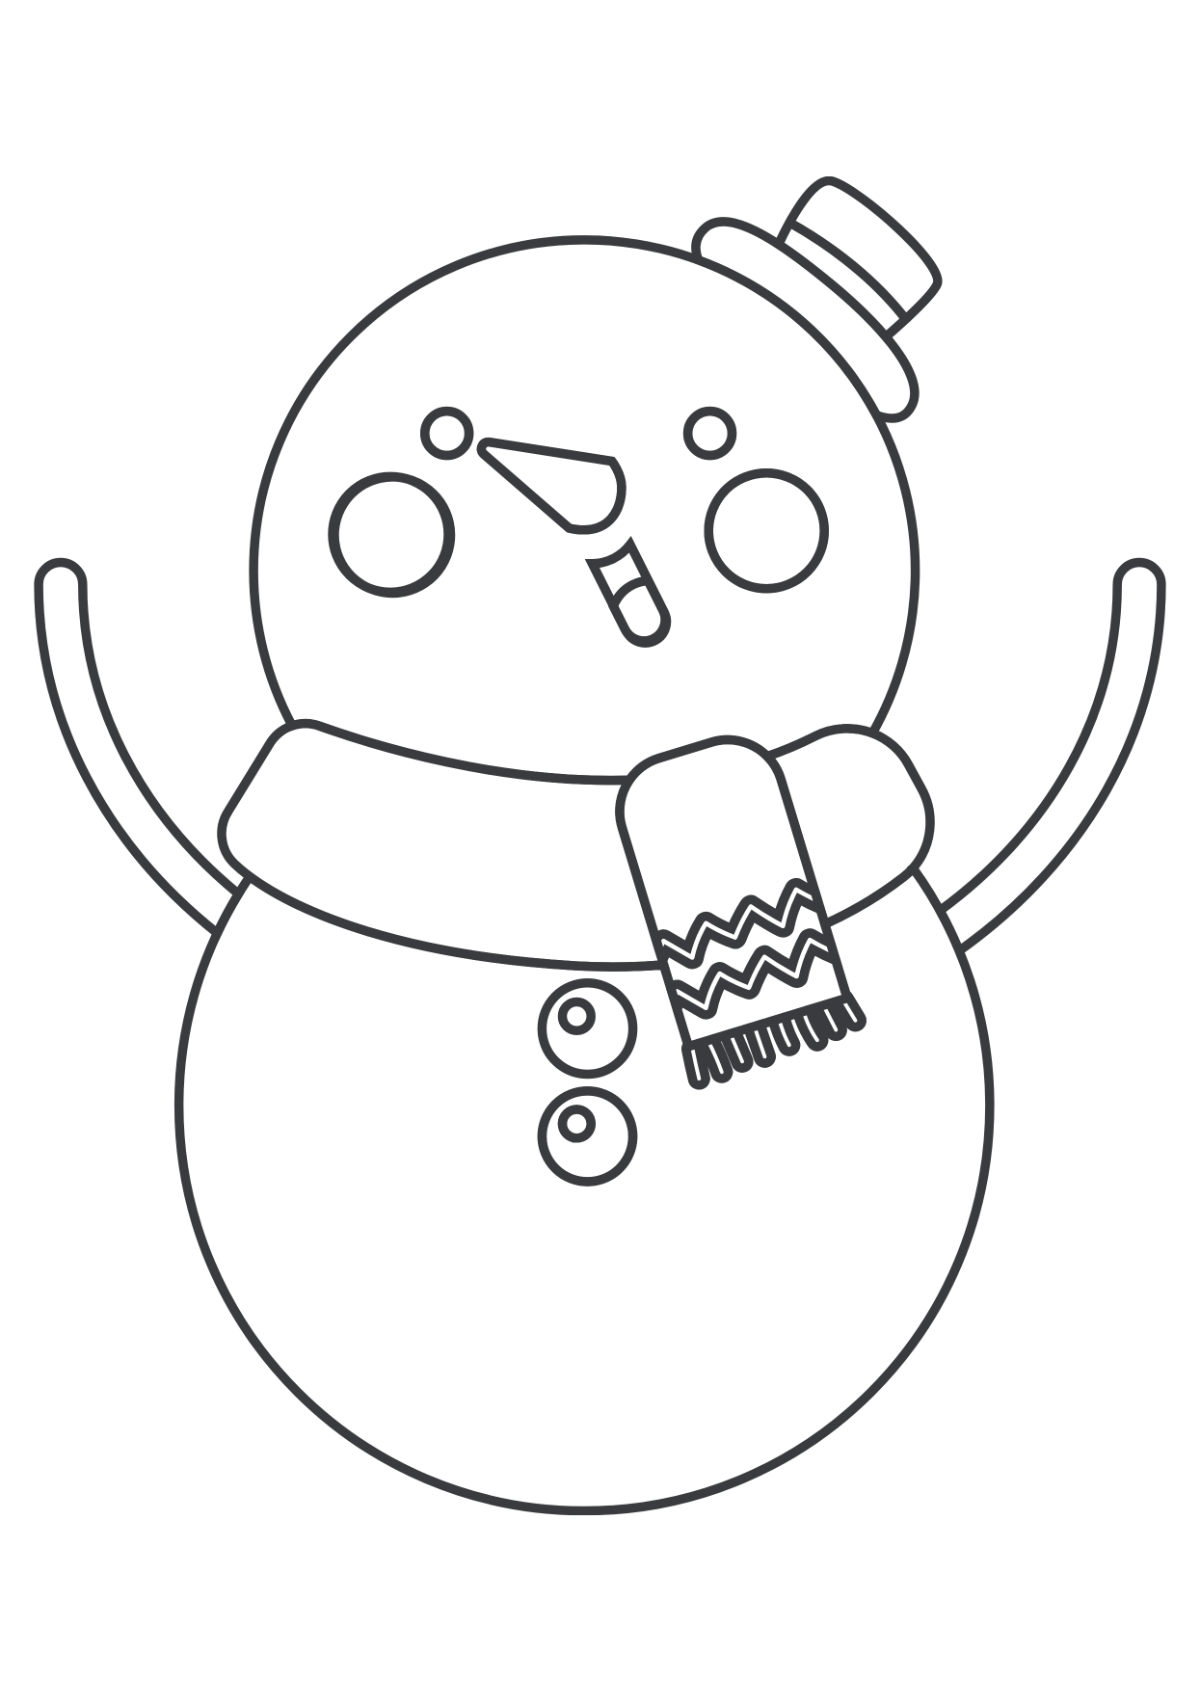 Christmas Drawing for Kids